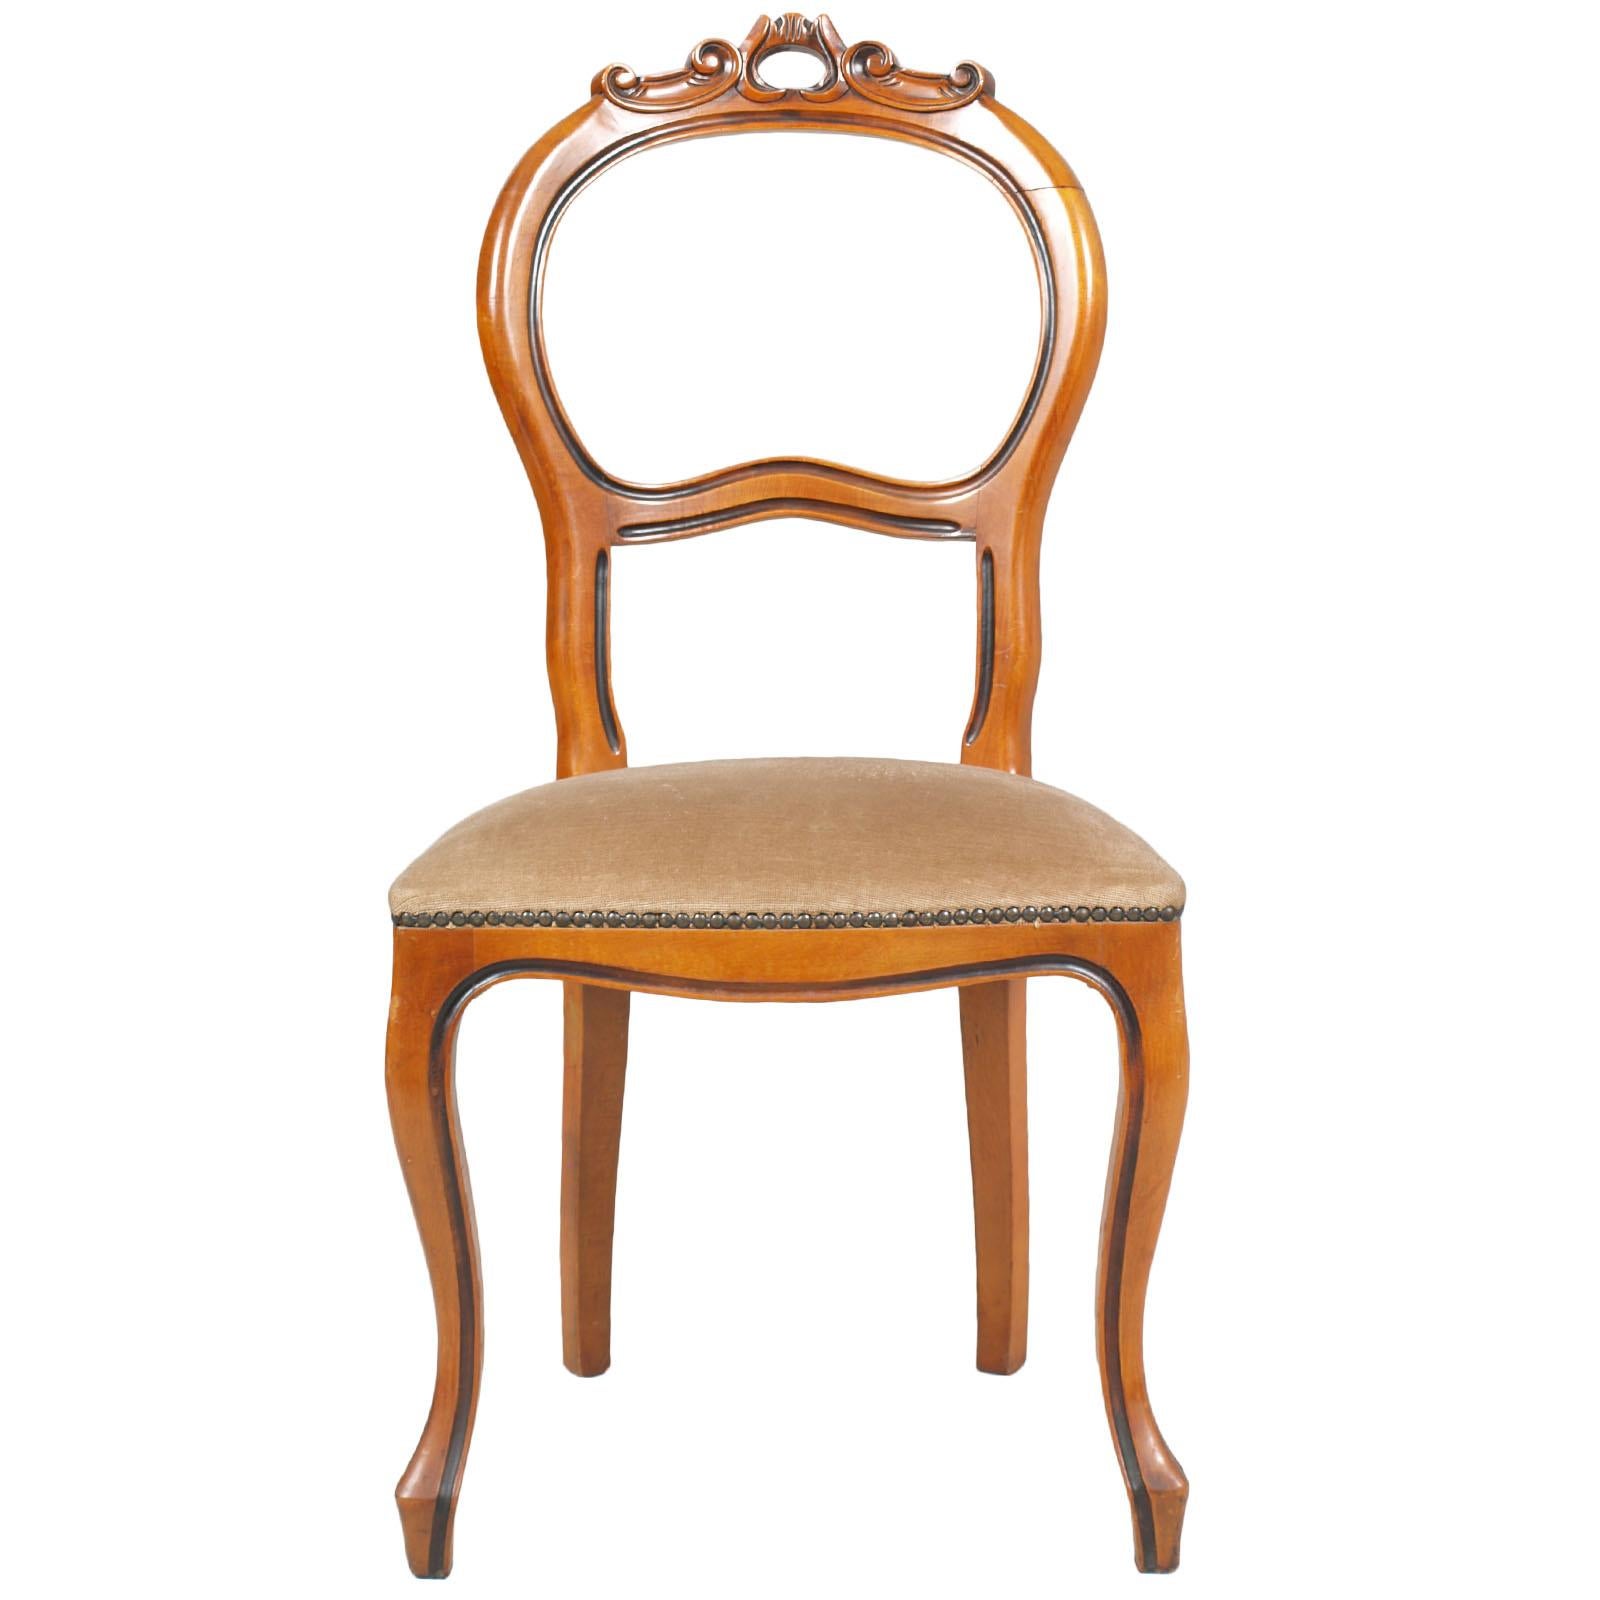 Sie können separat verkauft werden
Barocke Ferrarese Wurzelholz mit neoklassischen Referenzen , Art Decò Alter, Tisch mit sechs Stühlen des frühen zwanzigsten Jahrhunderts, in massivem blondem Nussbaum. Ovaler Tisch, mit handgeschnitzter Schürze und